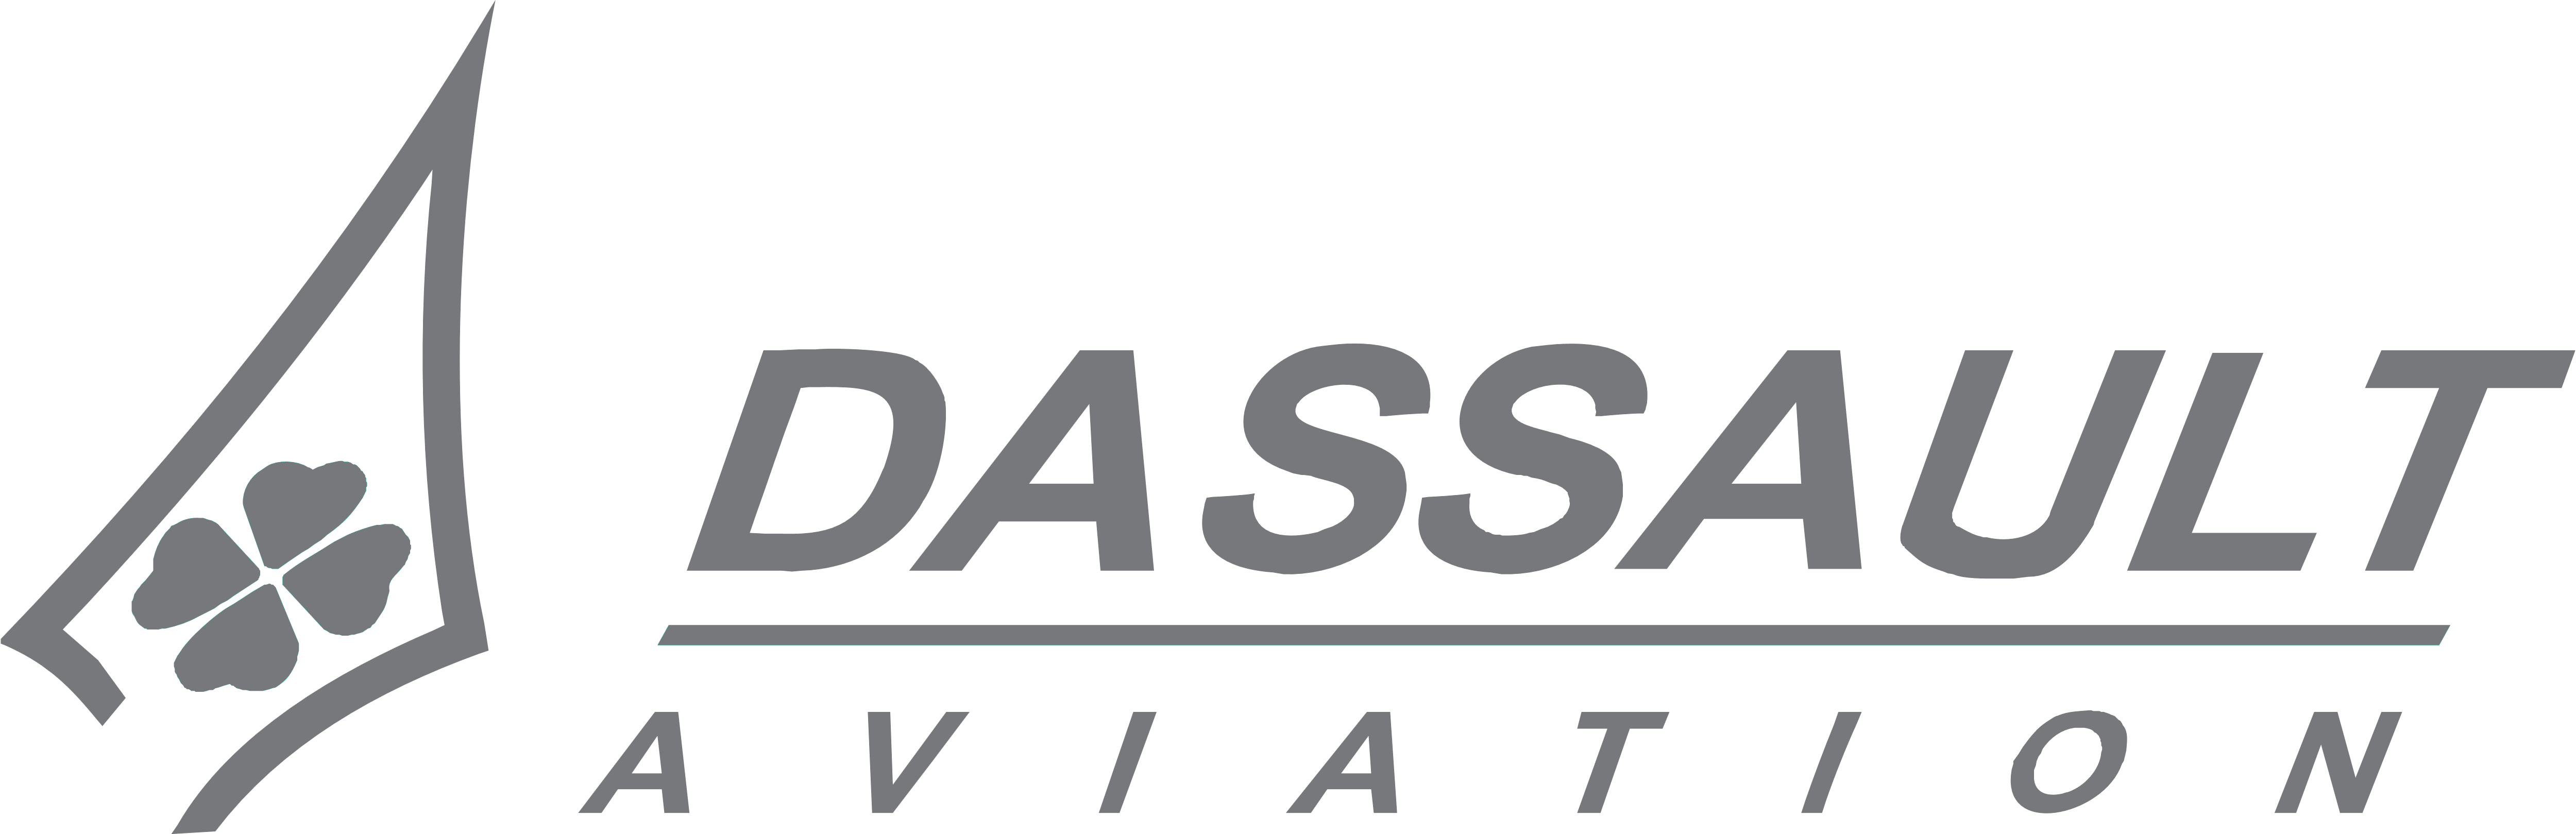 Dassault Aviation – Logos Download